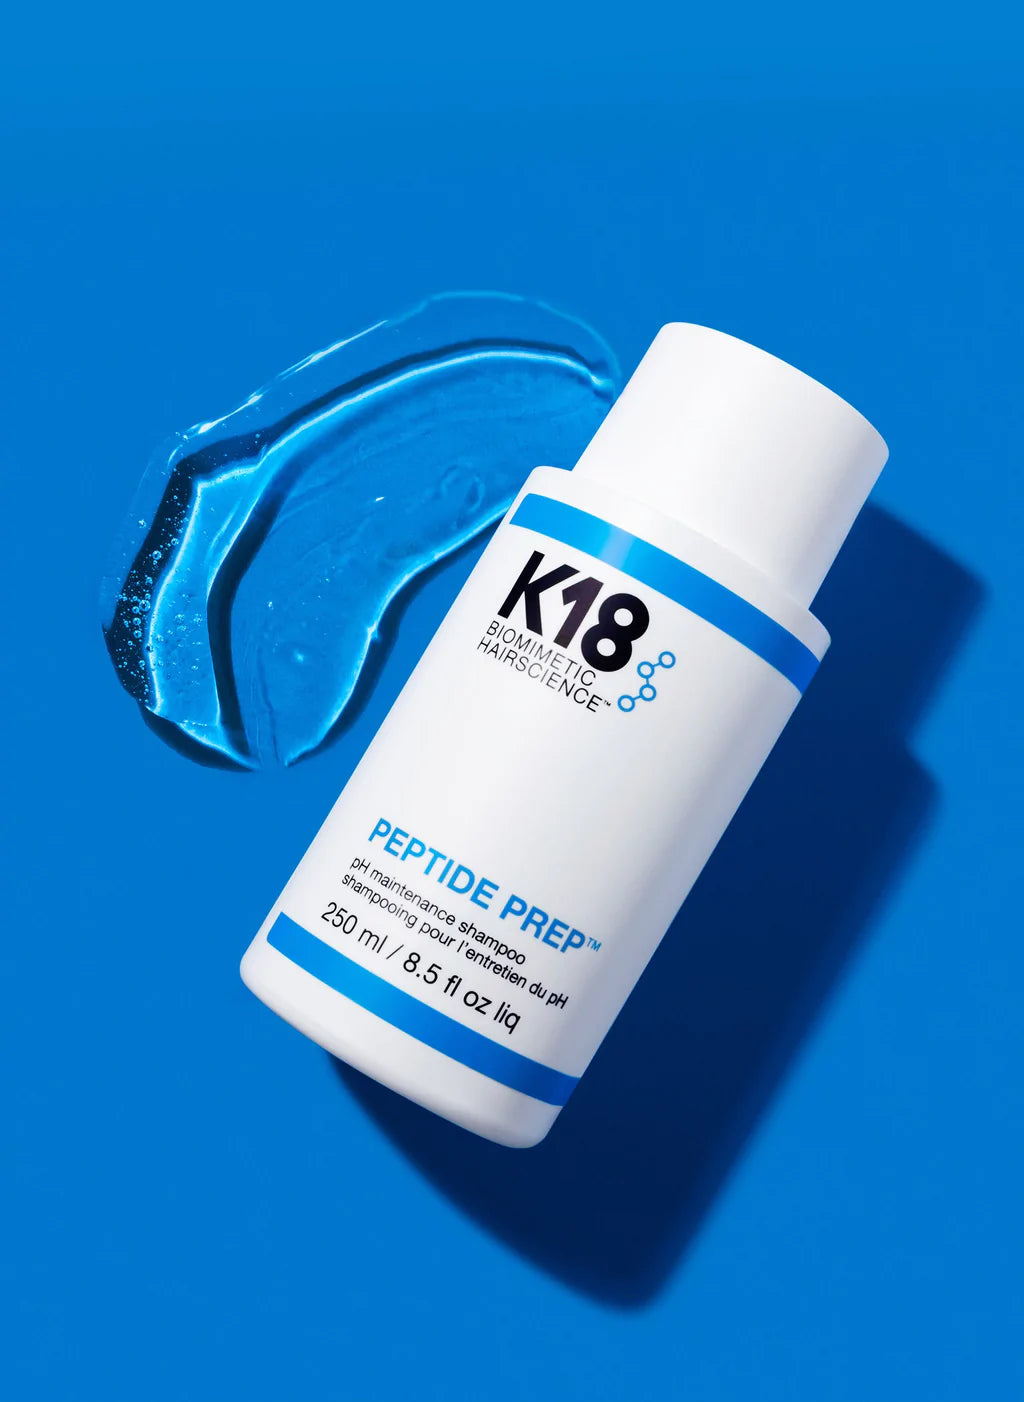 K18 PEPTIDE PREP™ pH maintenance shampoo